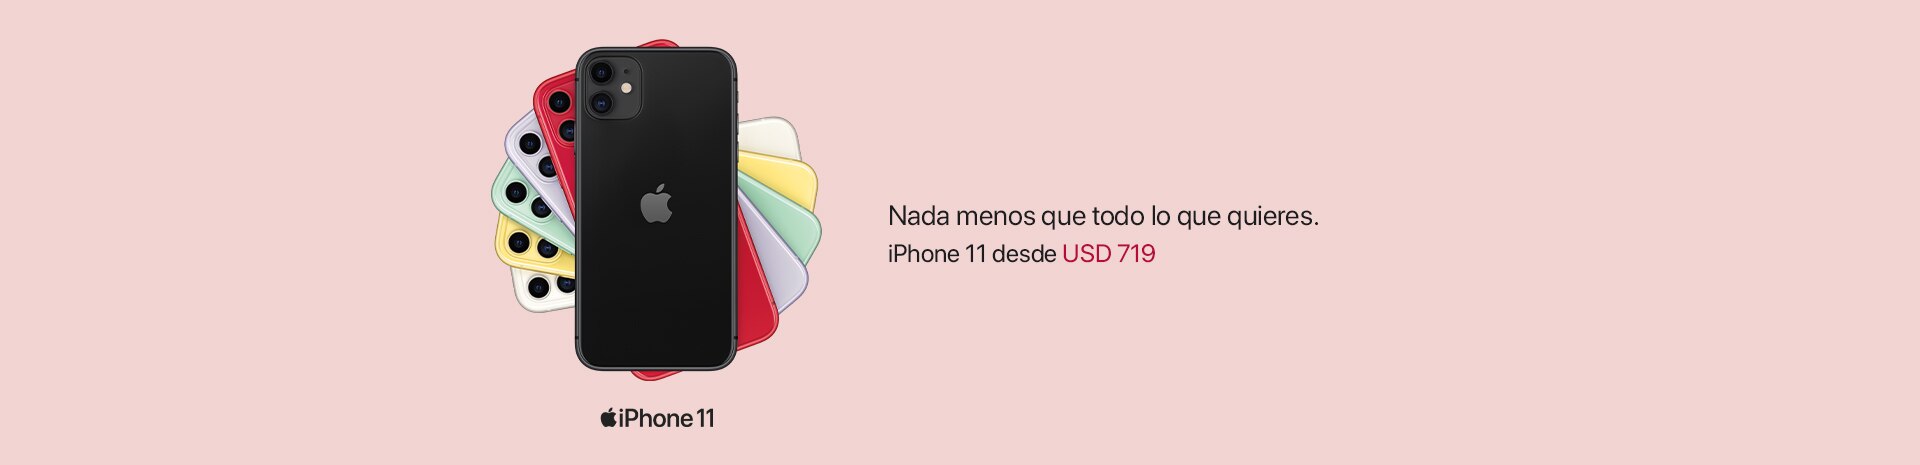 iPhone 11 | Regalos con Amor iPlace